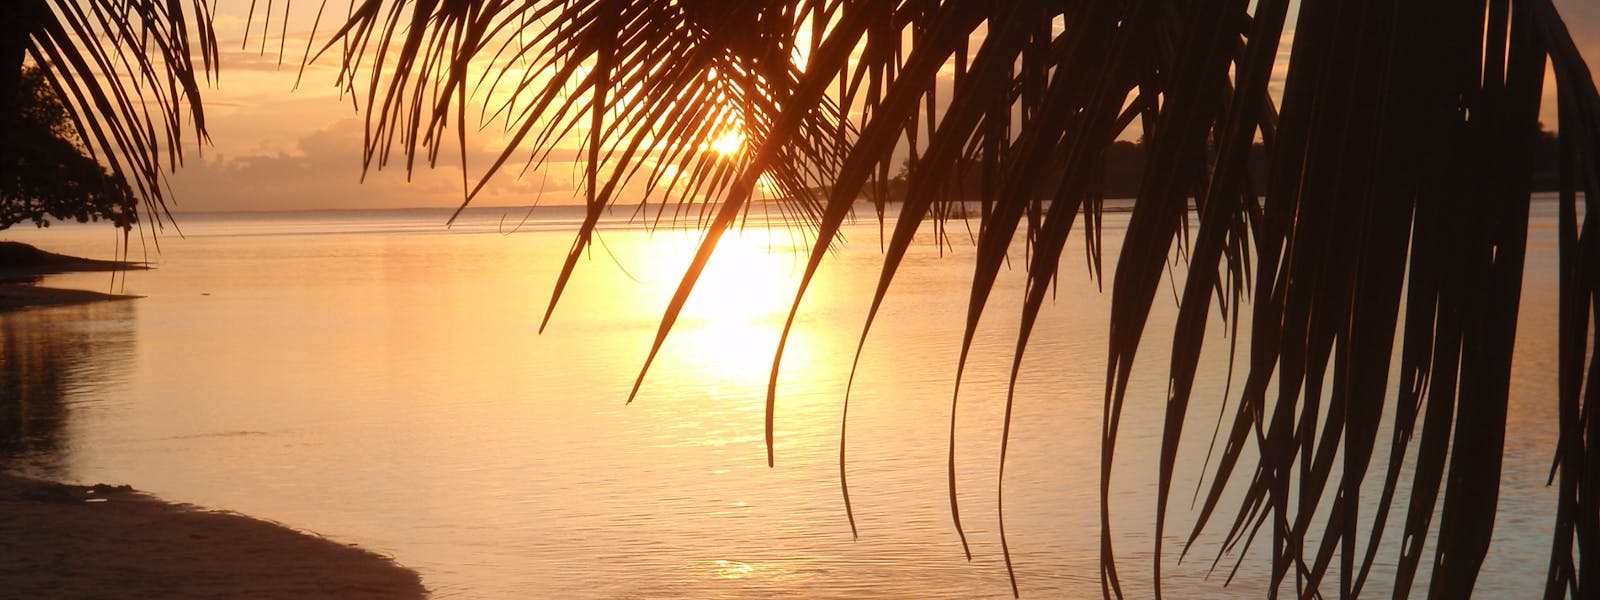 Erakor Island Sunset erakor island resort Vanuatu tourism